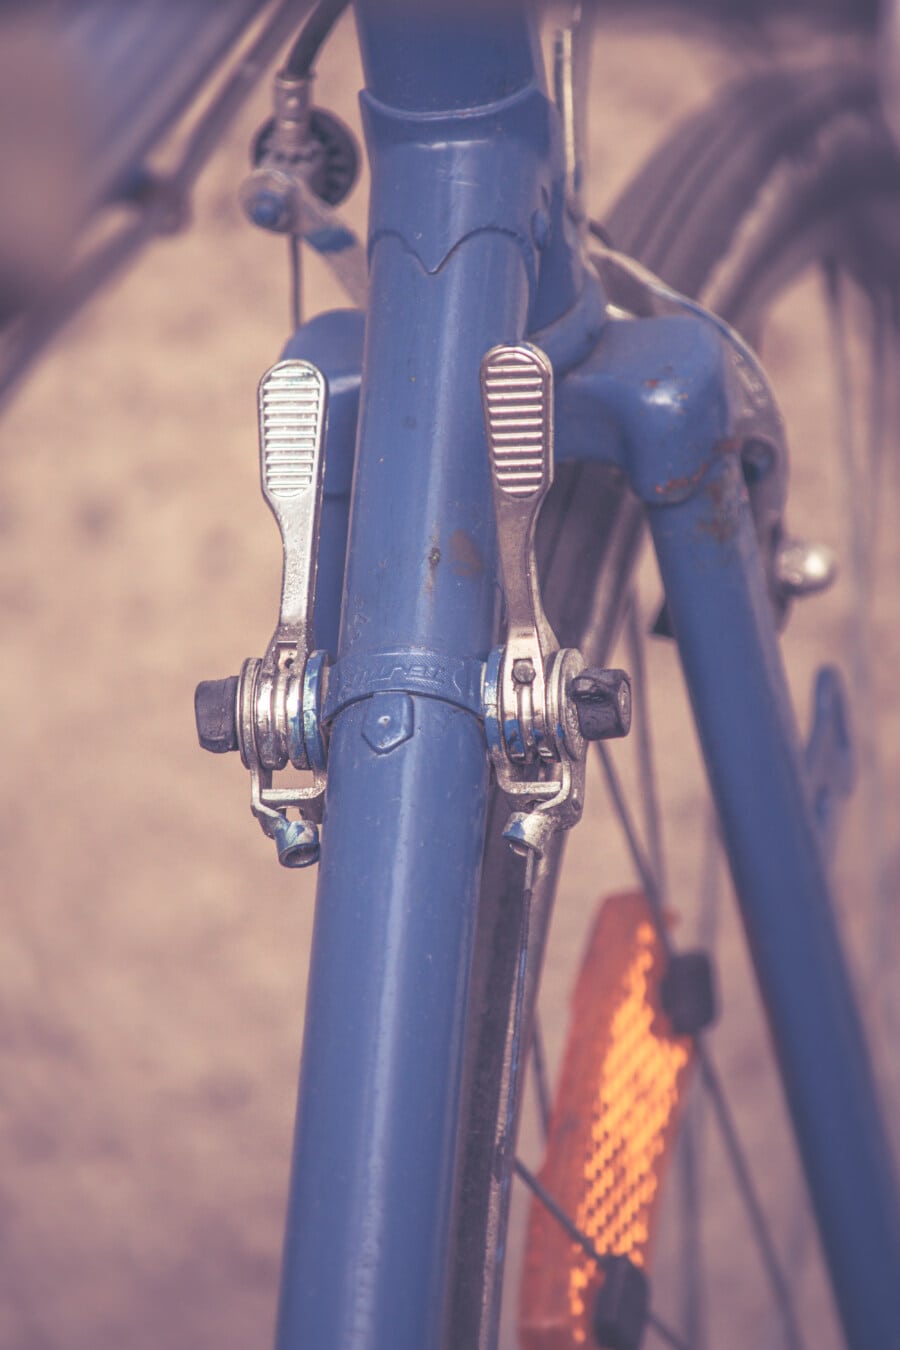 viteze, până aproape, biciclete, stil vechi, Vintage, detaliu, tehnologie, oţel, industria, vehicul